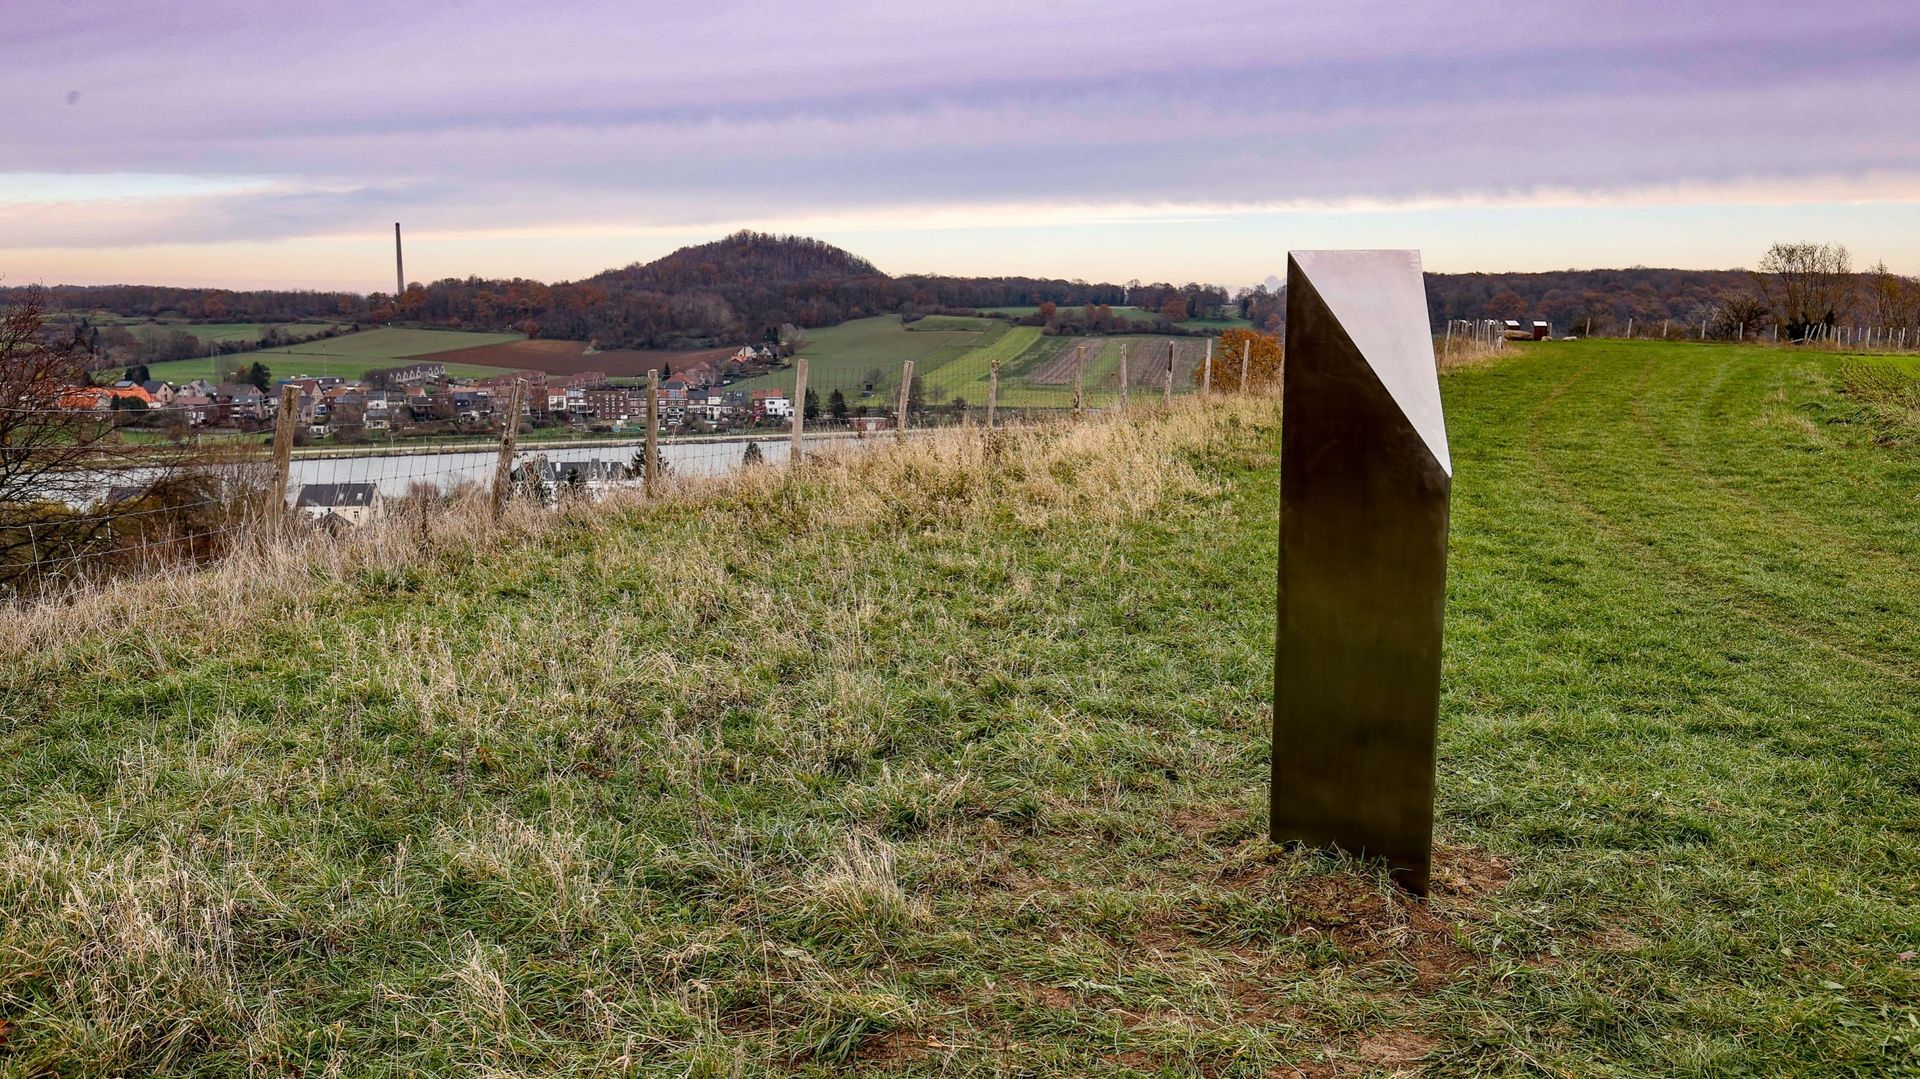 Le "monolithe" retrouvé dans le Limbourg mis au sol